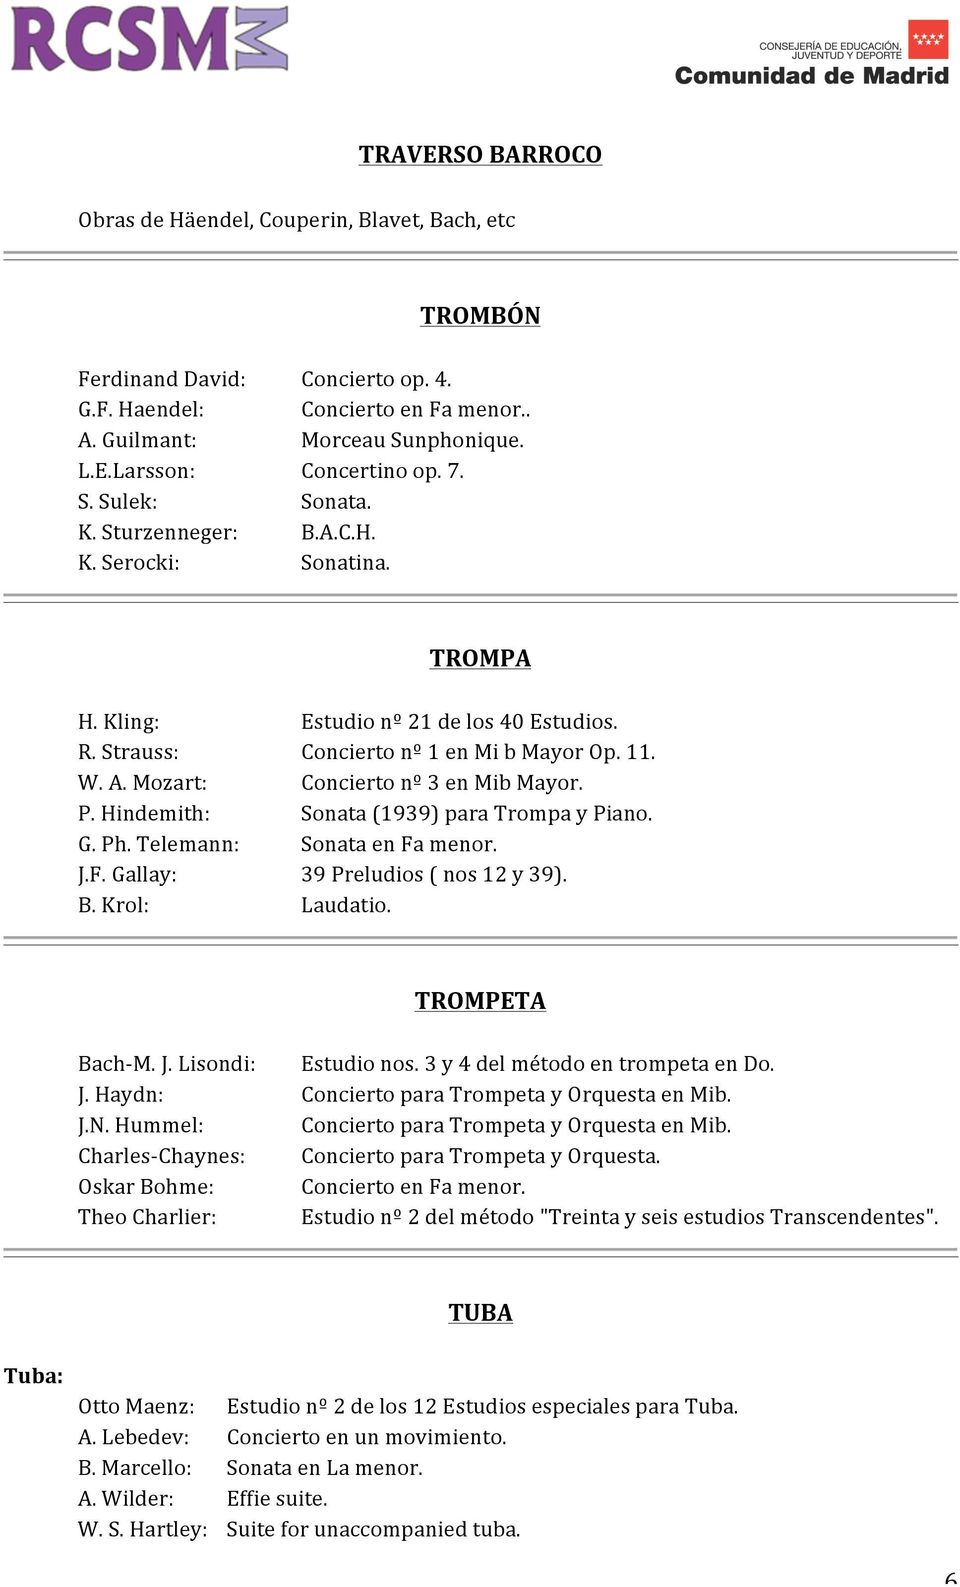 Mozart: Concierto nº 3 en Mib Mayor. P. Hindemith: Sonata (1939) para Trompa y Piano. G. Ph. Telemann: Sonata en Fa menor. J.F. Gallay: 39 Preludios ( nos 12 y 39). B. Krol: Laudatio.